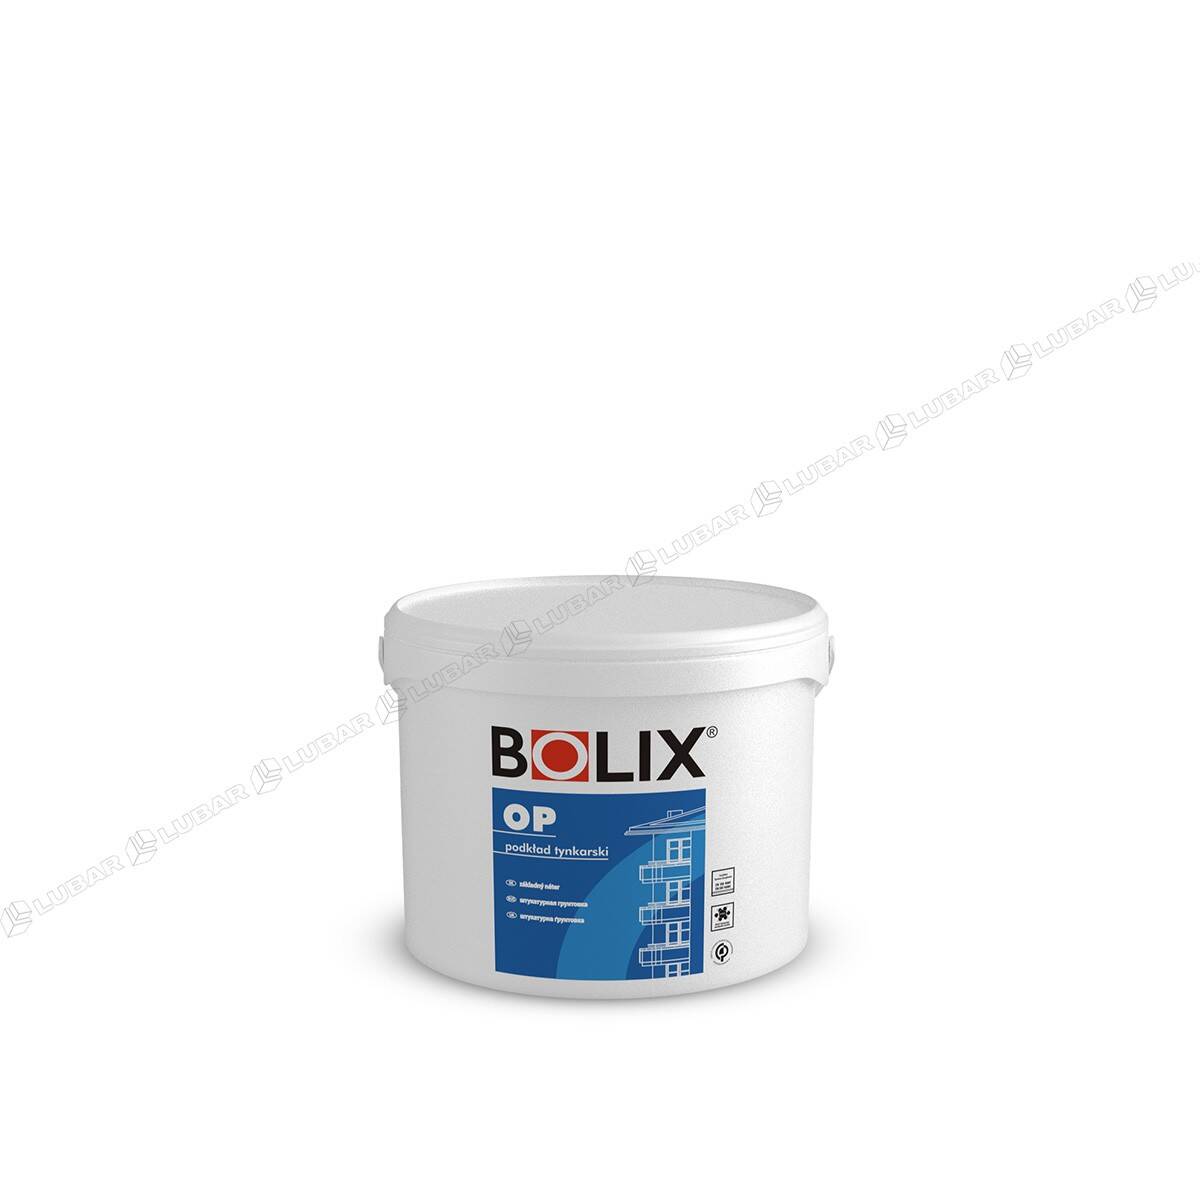 BOLIX OP Podkład tynkarski pod cienkowarstwowe tynki mineralne, akrylowe i dekoracyjne 10 kg